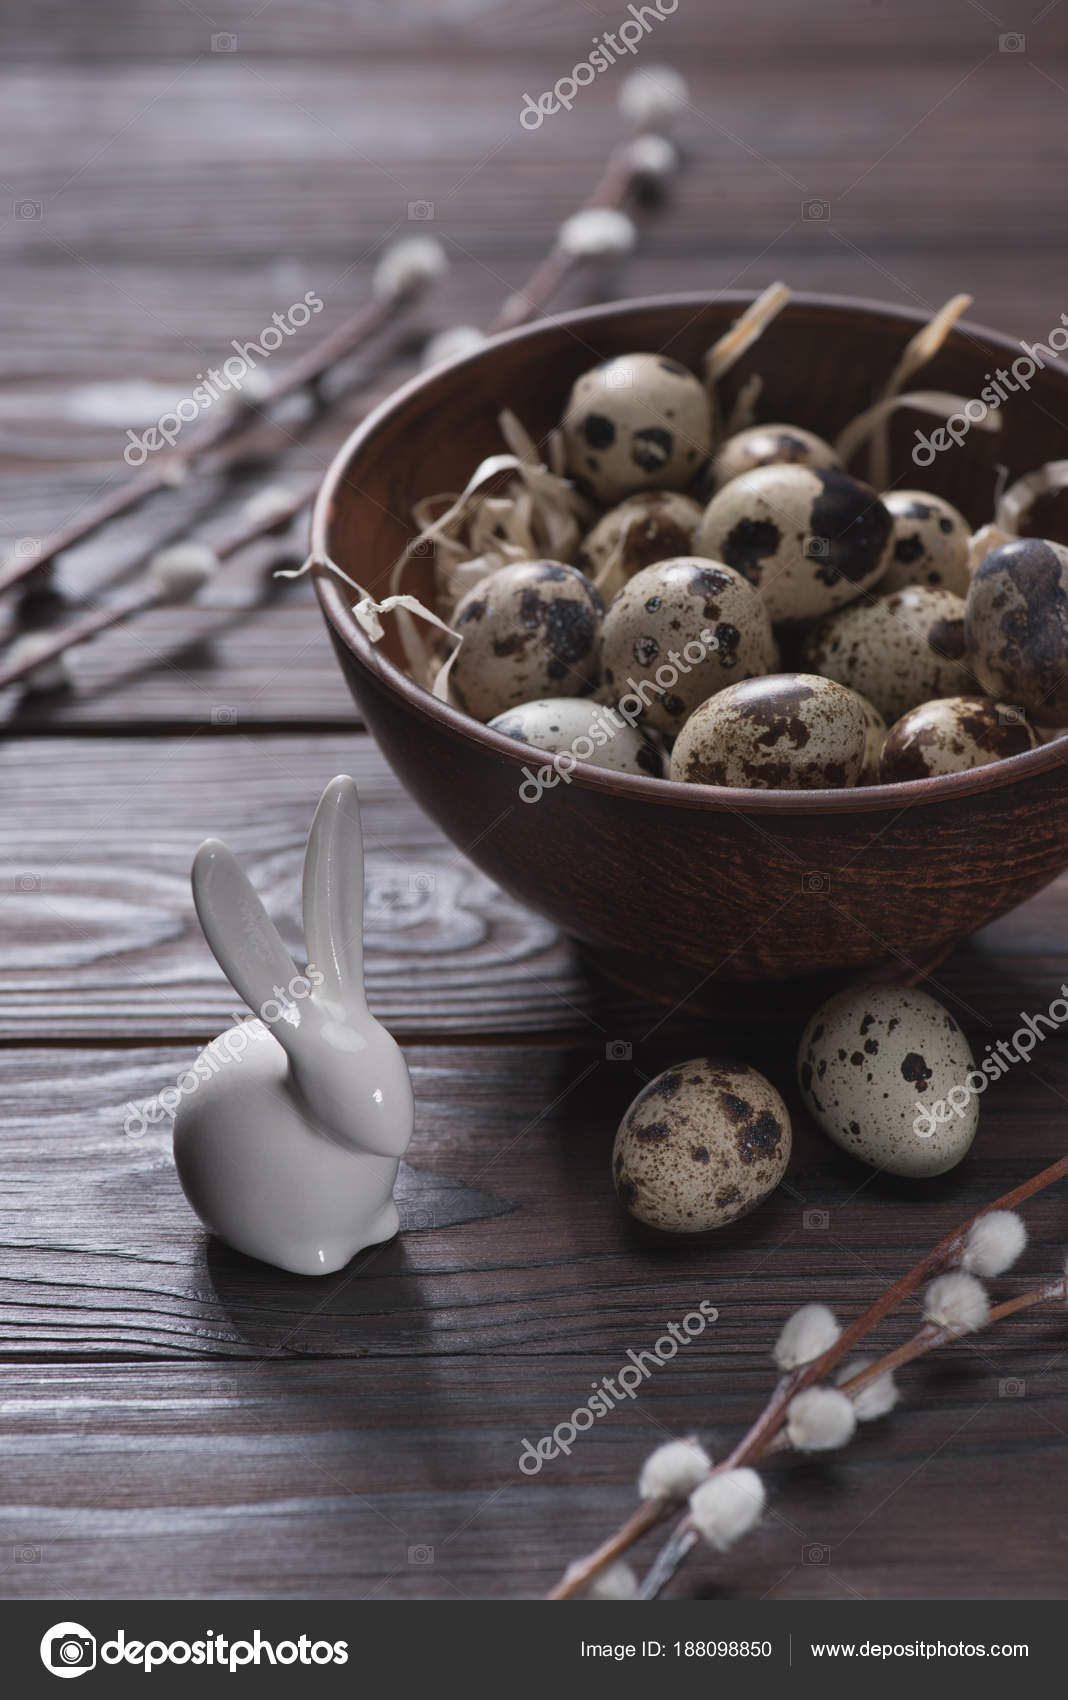 https://st3.depositphotos.com/12985656/18809/i/1600/depositphotos_188098850-stock-photo-easter-quail-eggs-bowl-straw.jpg